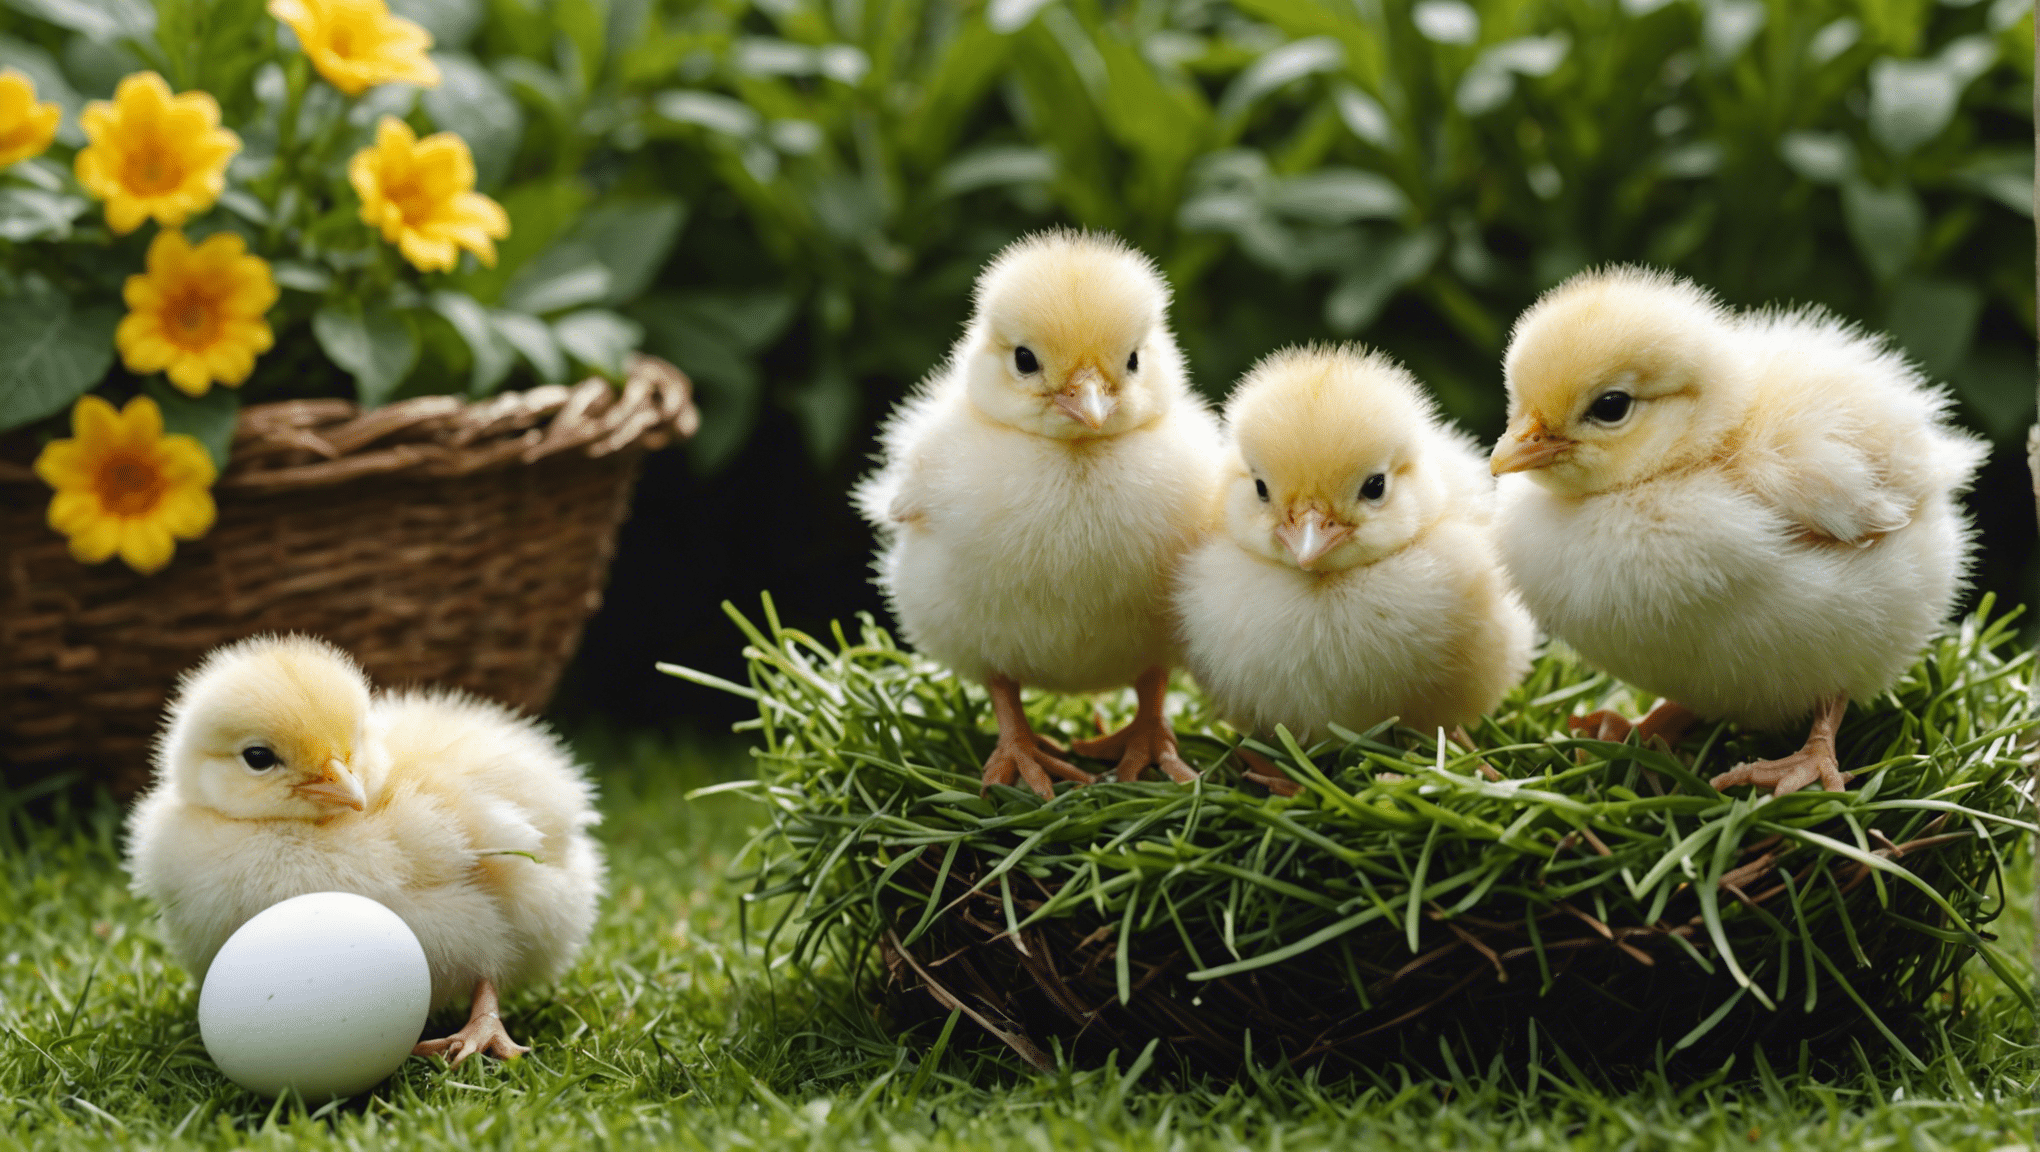 Apprenez à élever des poussins à partir d'œufs grâce à notre guide complet sur l'éclosion et les soins apportés aux poussins.